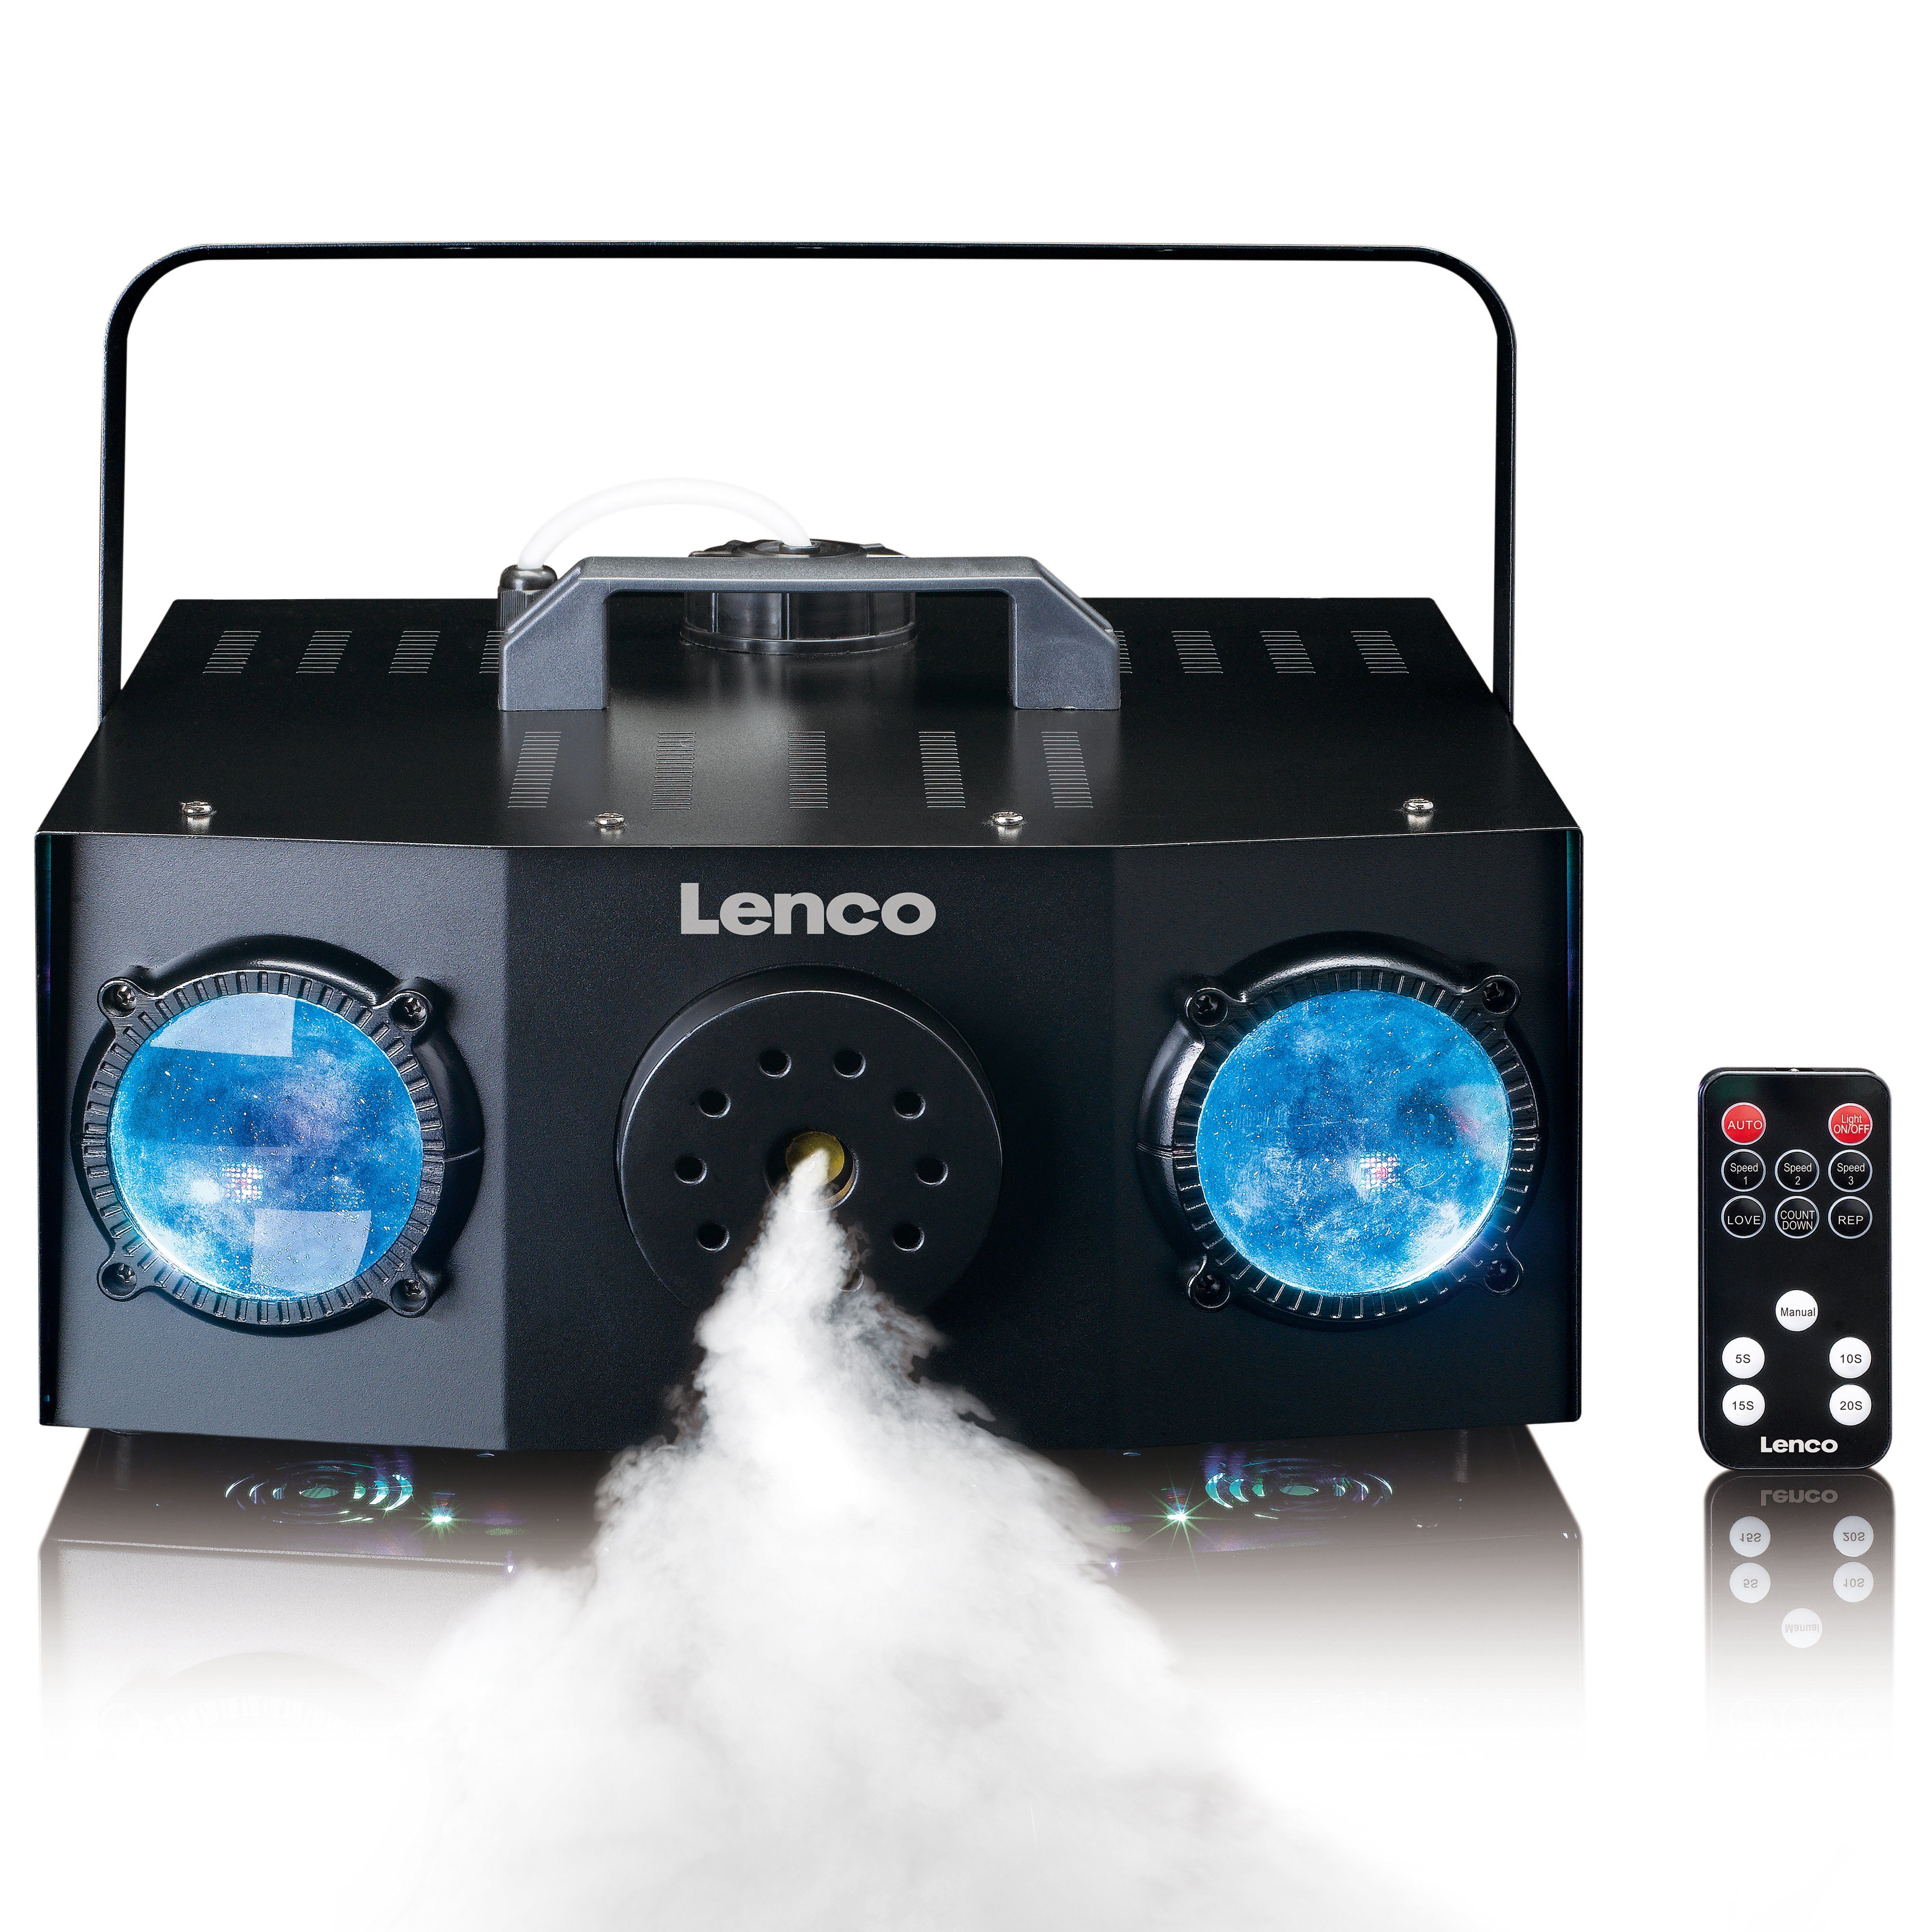 LED,Nebel-machine, Auto- Lichtshow-Programm Integriertes Lenco Musikmodus, Blau,Grün,Rot Discolicht LED LFM-220BK, im und Matrix